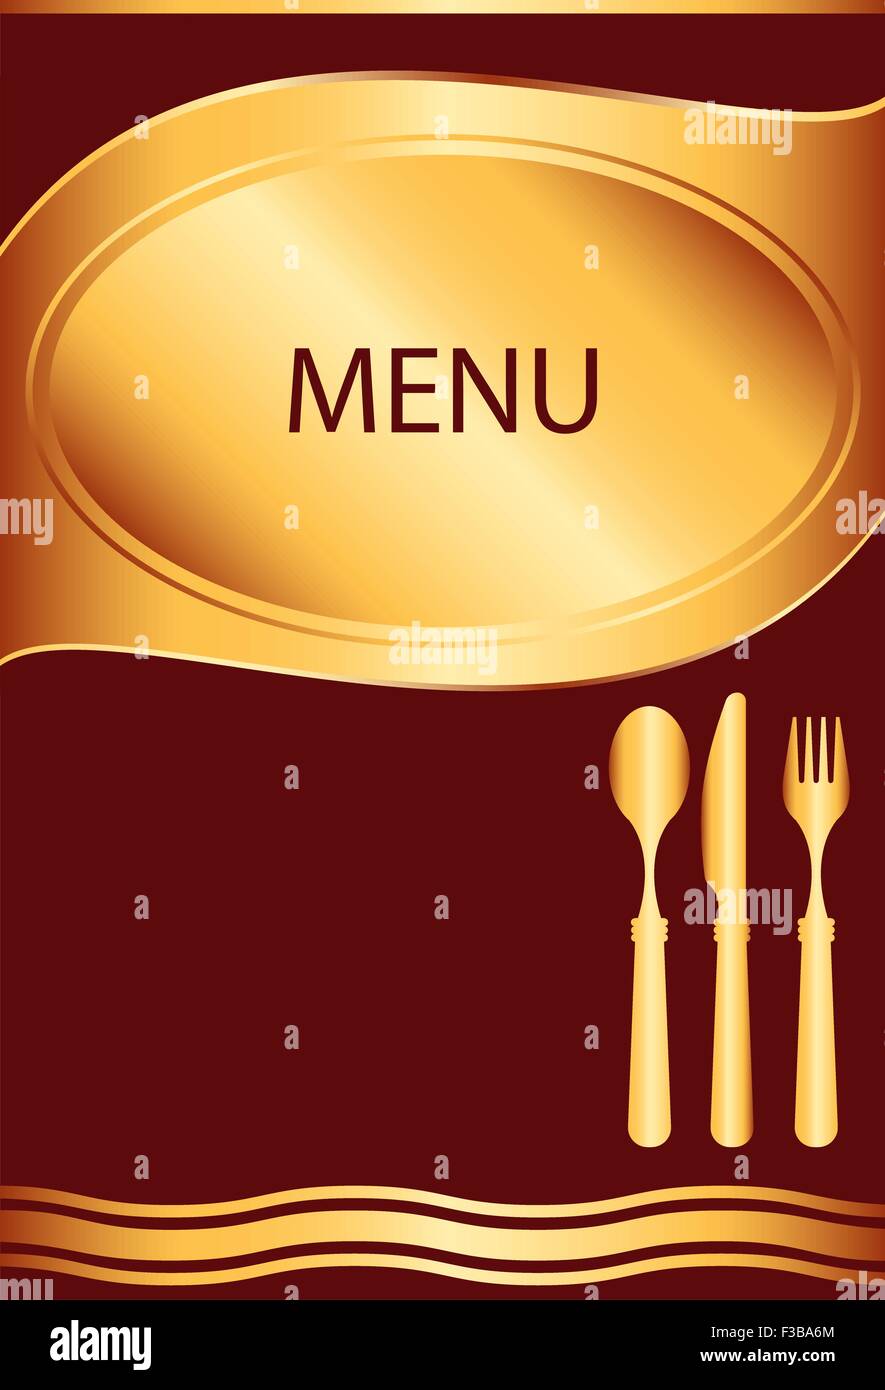 Thiết kế mẫu thẻ menu vector khác biệt, độc đáo sẽ giúp nhà hàng của bạn trở nên chuyên nghiệp hơn. Với nhiều mẫu thiết kế đa dạng và tinh tế, bạn hoàn toàn có thể tạo ra một bộ sưu tập thẻ menu đẹp mắt và ấn tượng. 